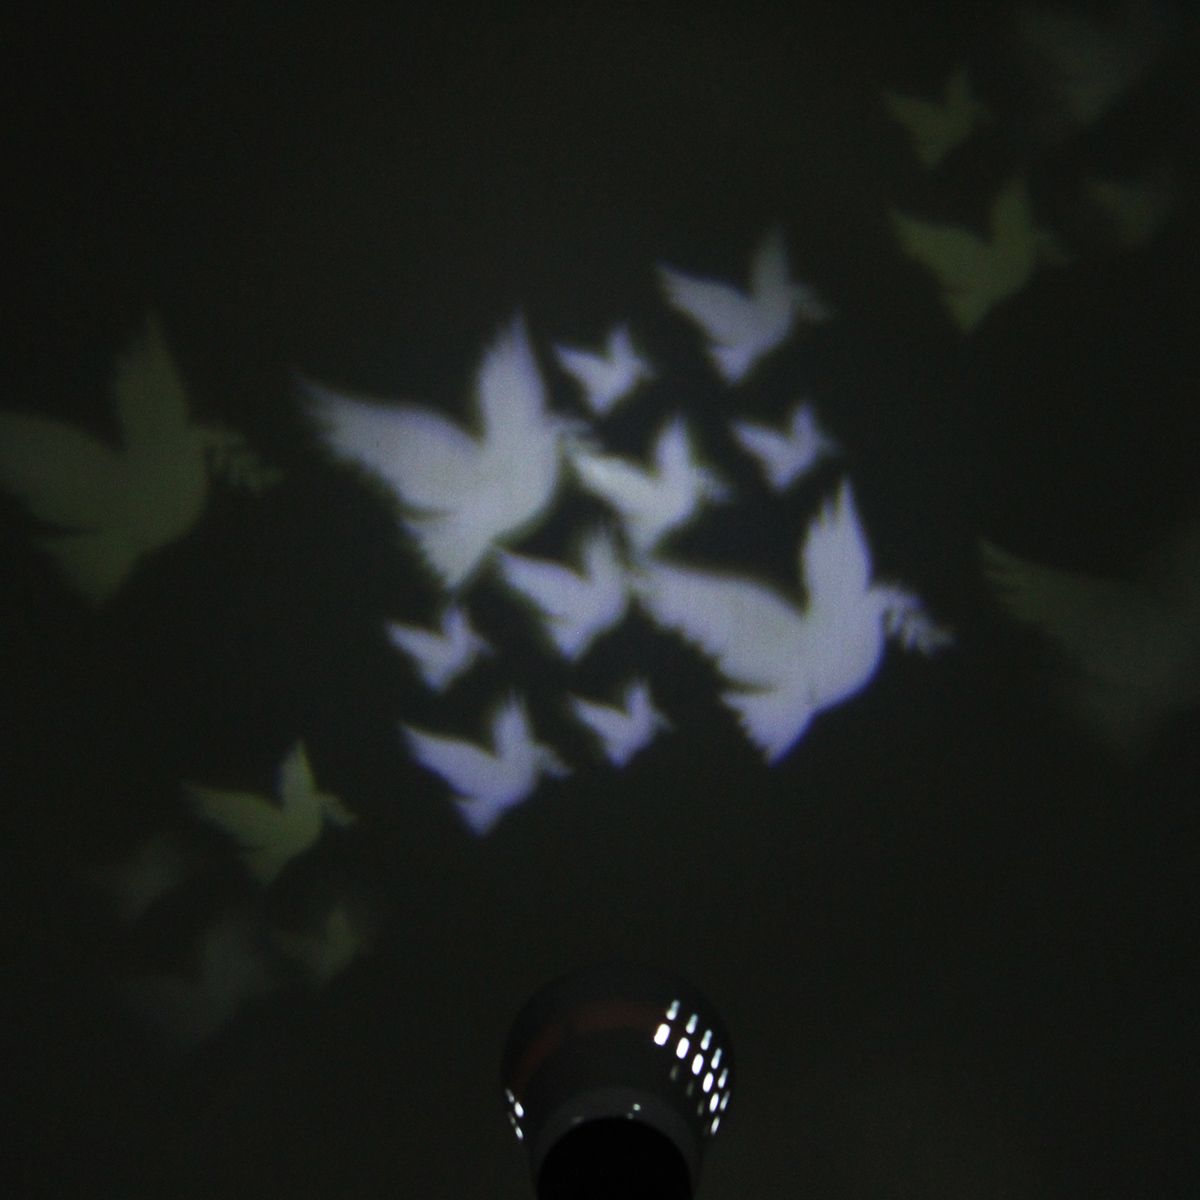 E27-4W-85-265V-LED-Moving-Pigeon-Landscape-Laser-Projector-Stage-Light-Lamp-Bulb-Decor-1109944